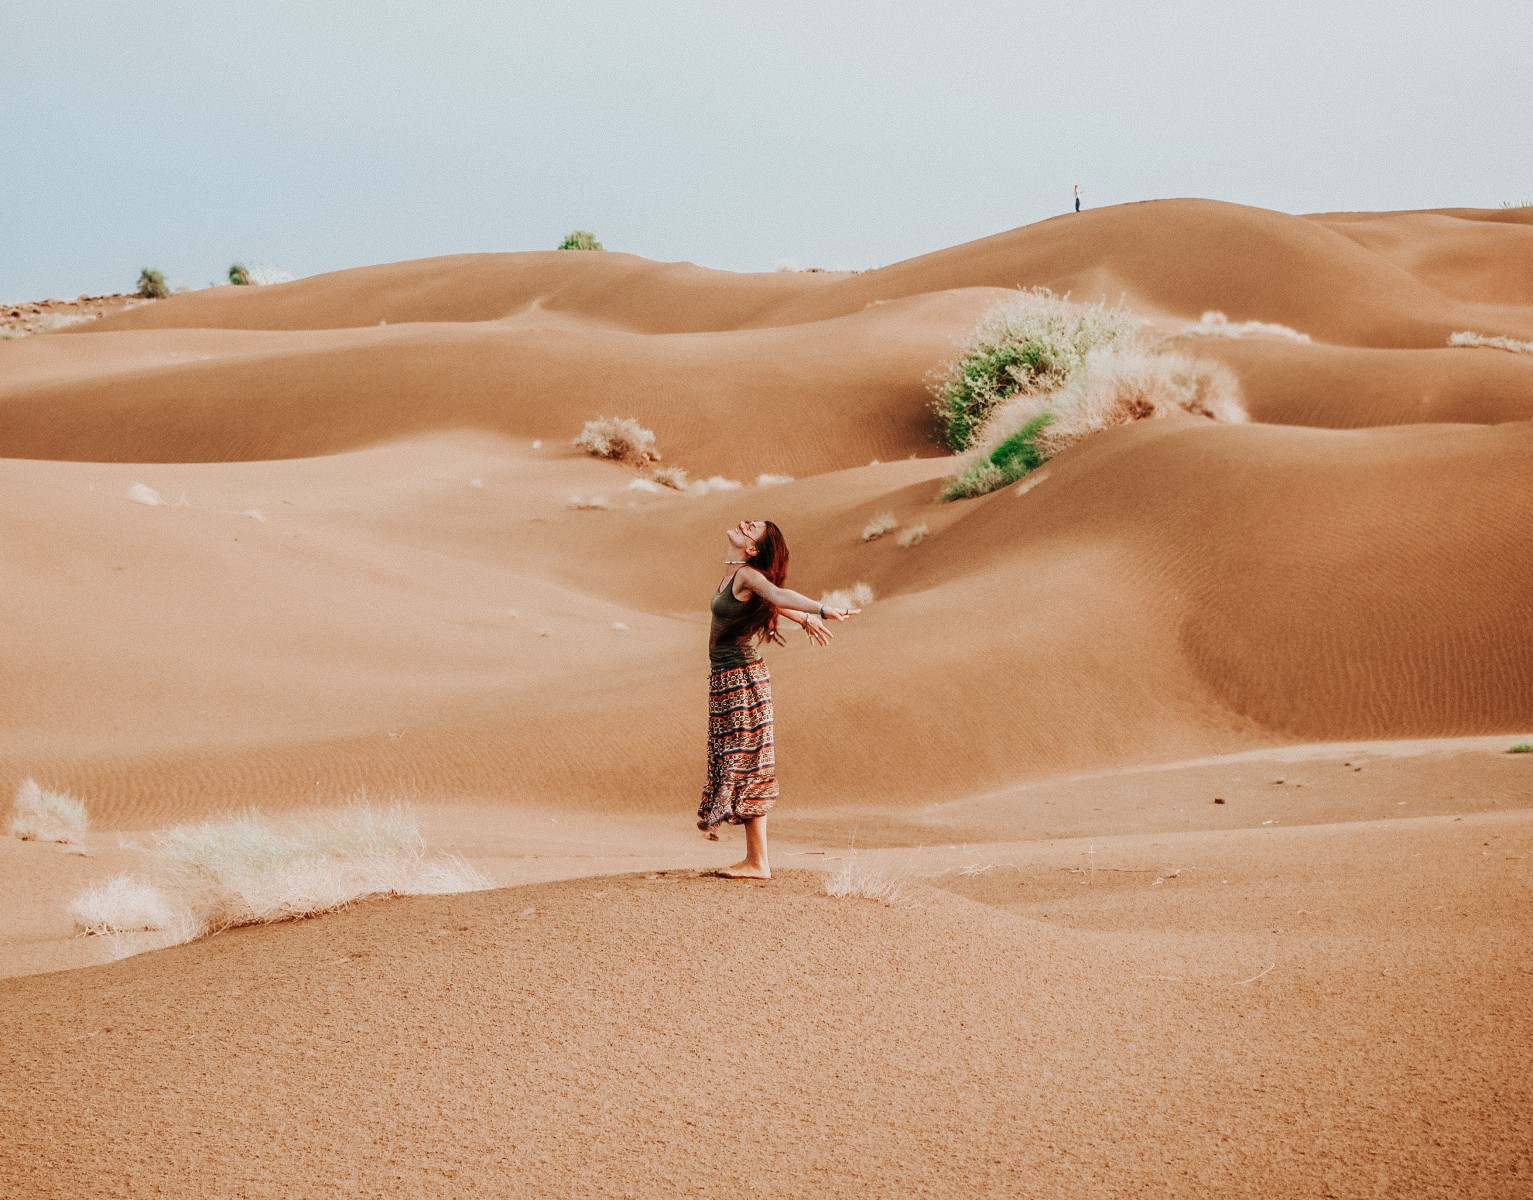 desert oasis in jaisalmer